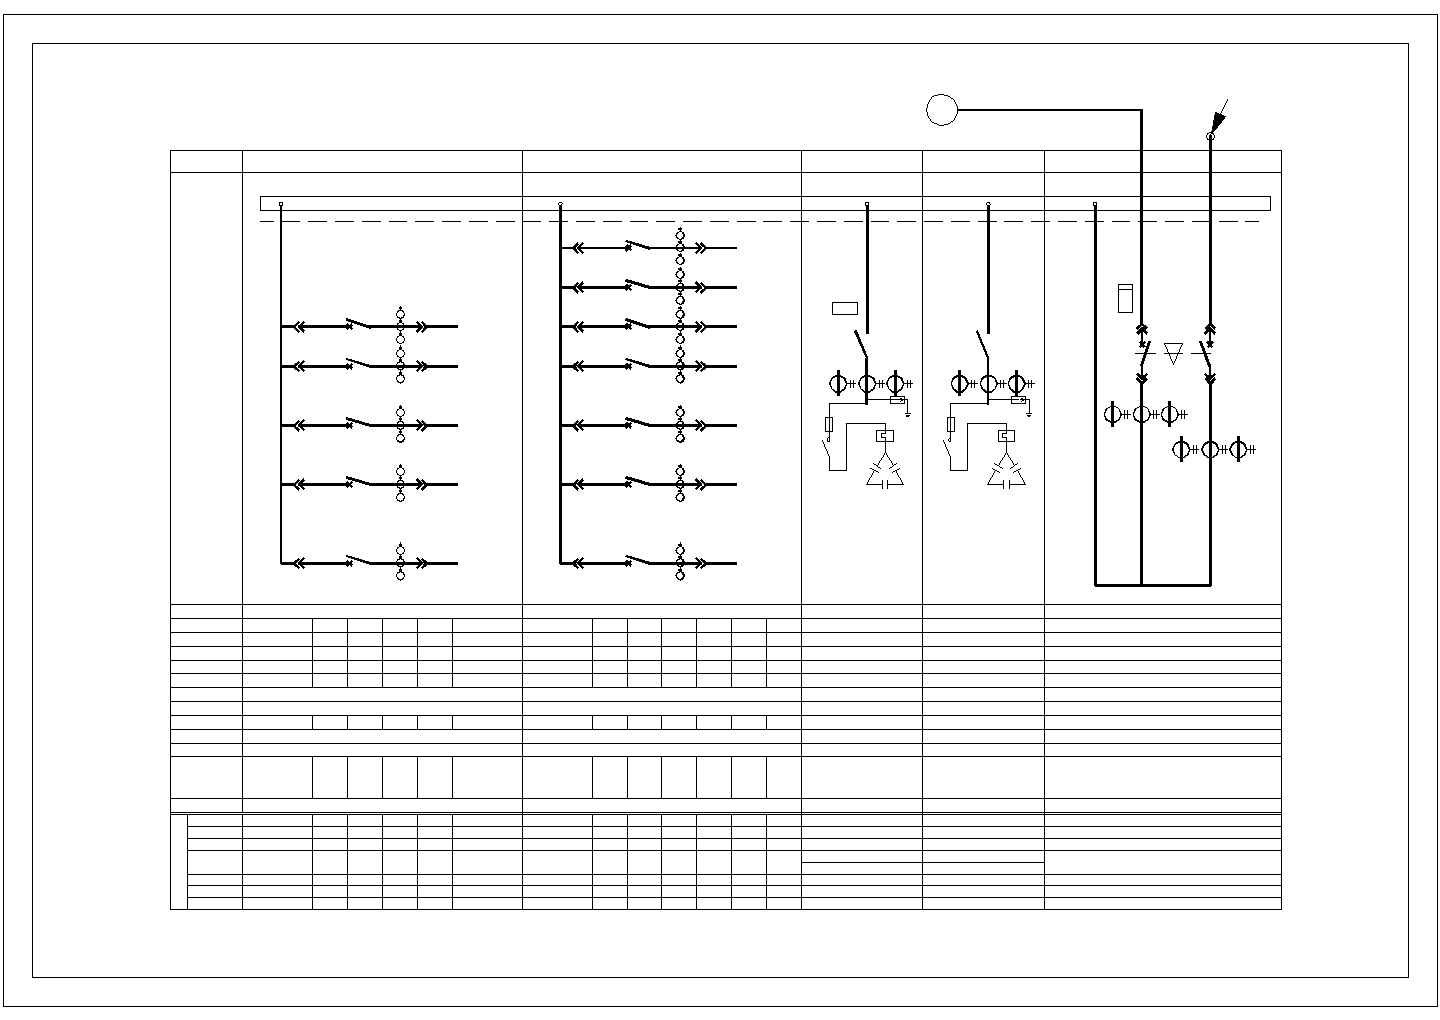 【安徽省】低压配电系统图标准设计图纸